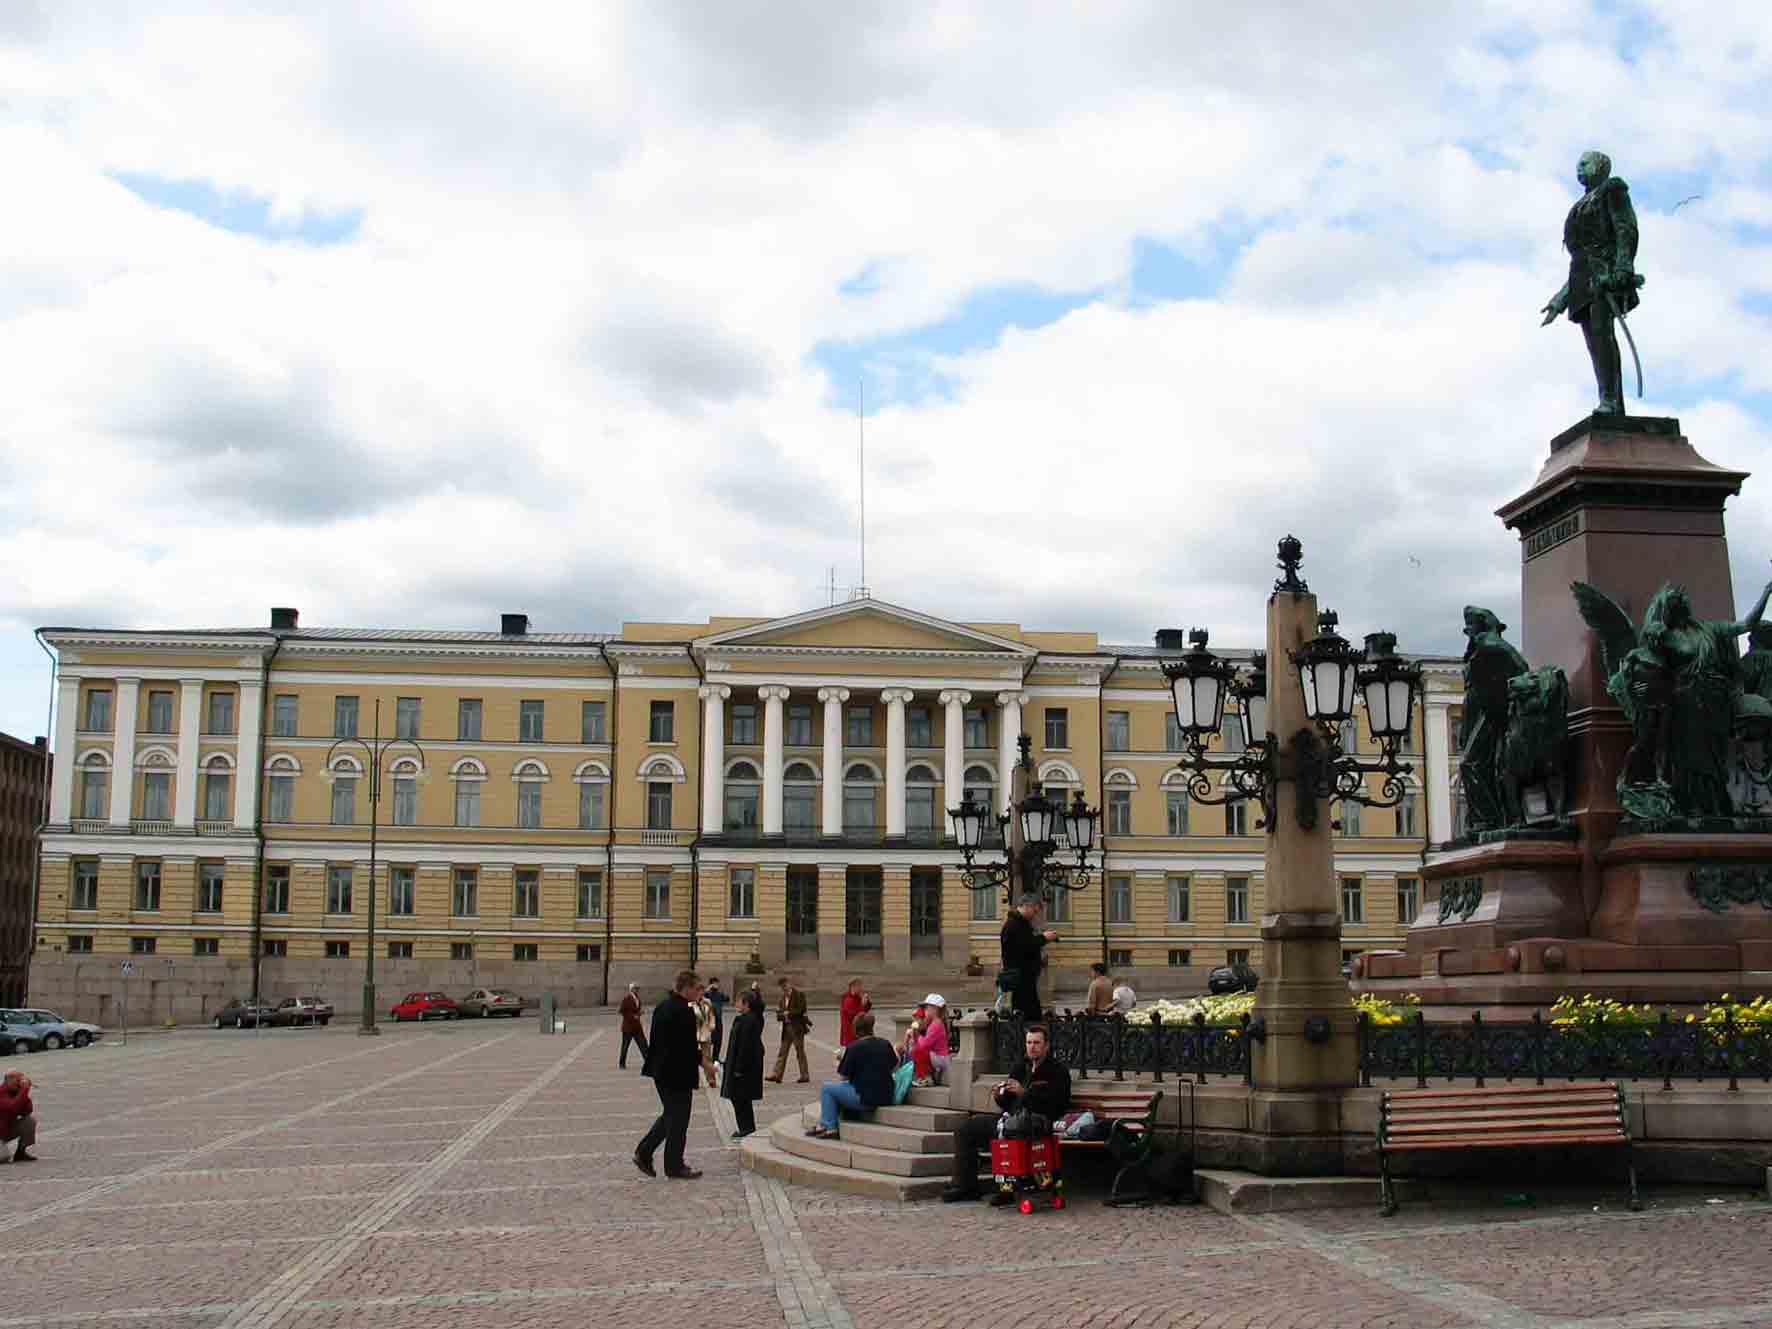 University-of-Helsinki